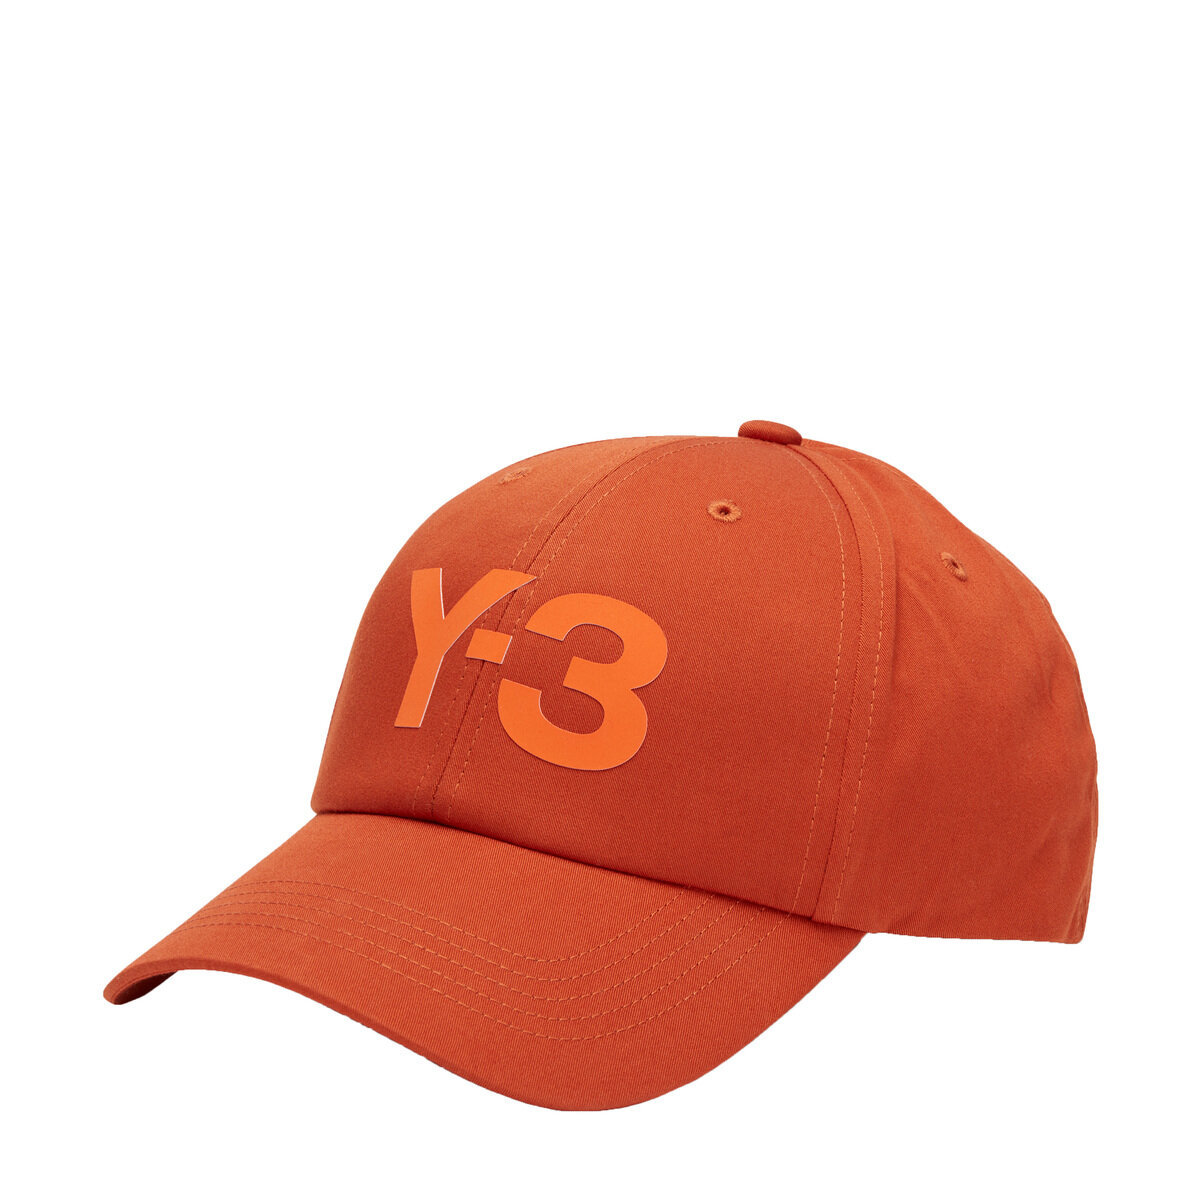 Y-3 ワイスリー ロゴキャップ ベースボールキャップ 帽子 メンズ レディース ユニセックス LOGO CAP HM8335 ORANGE/FOXRED M